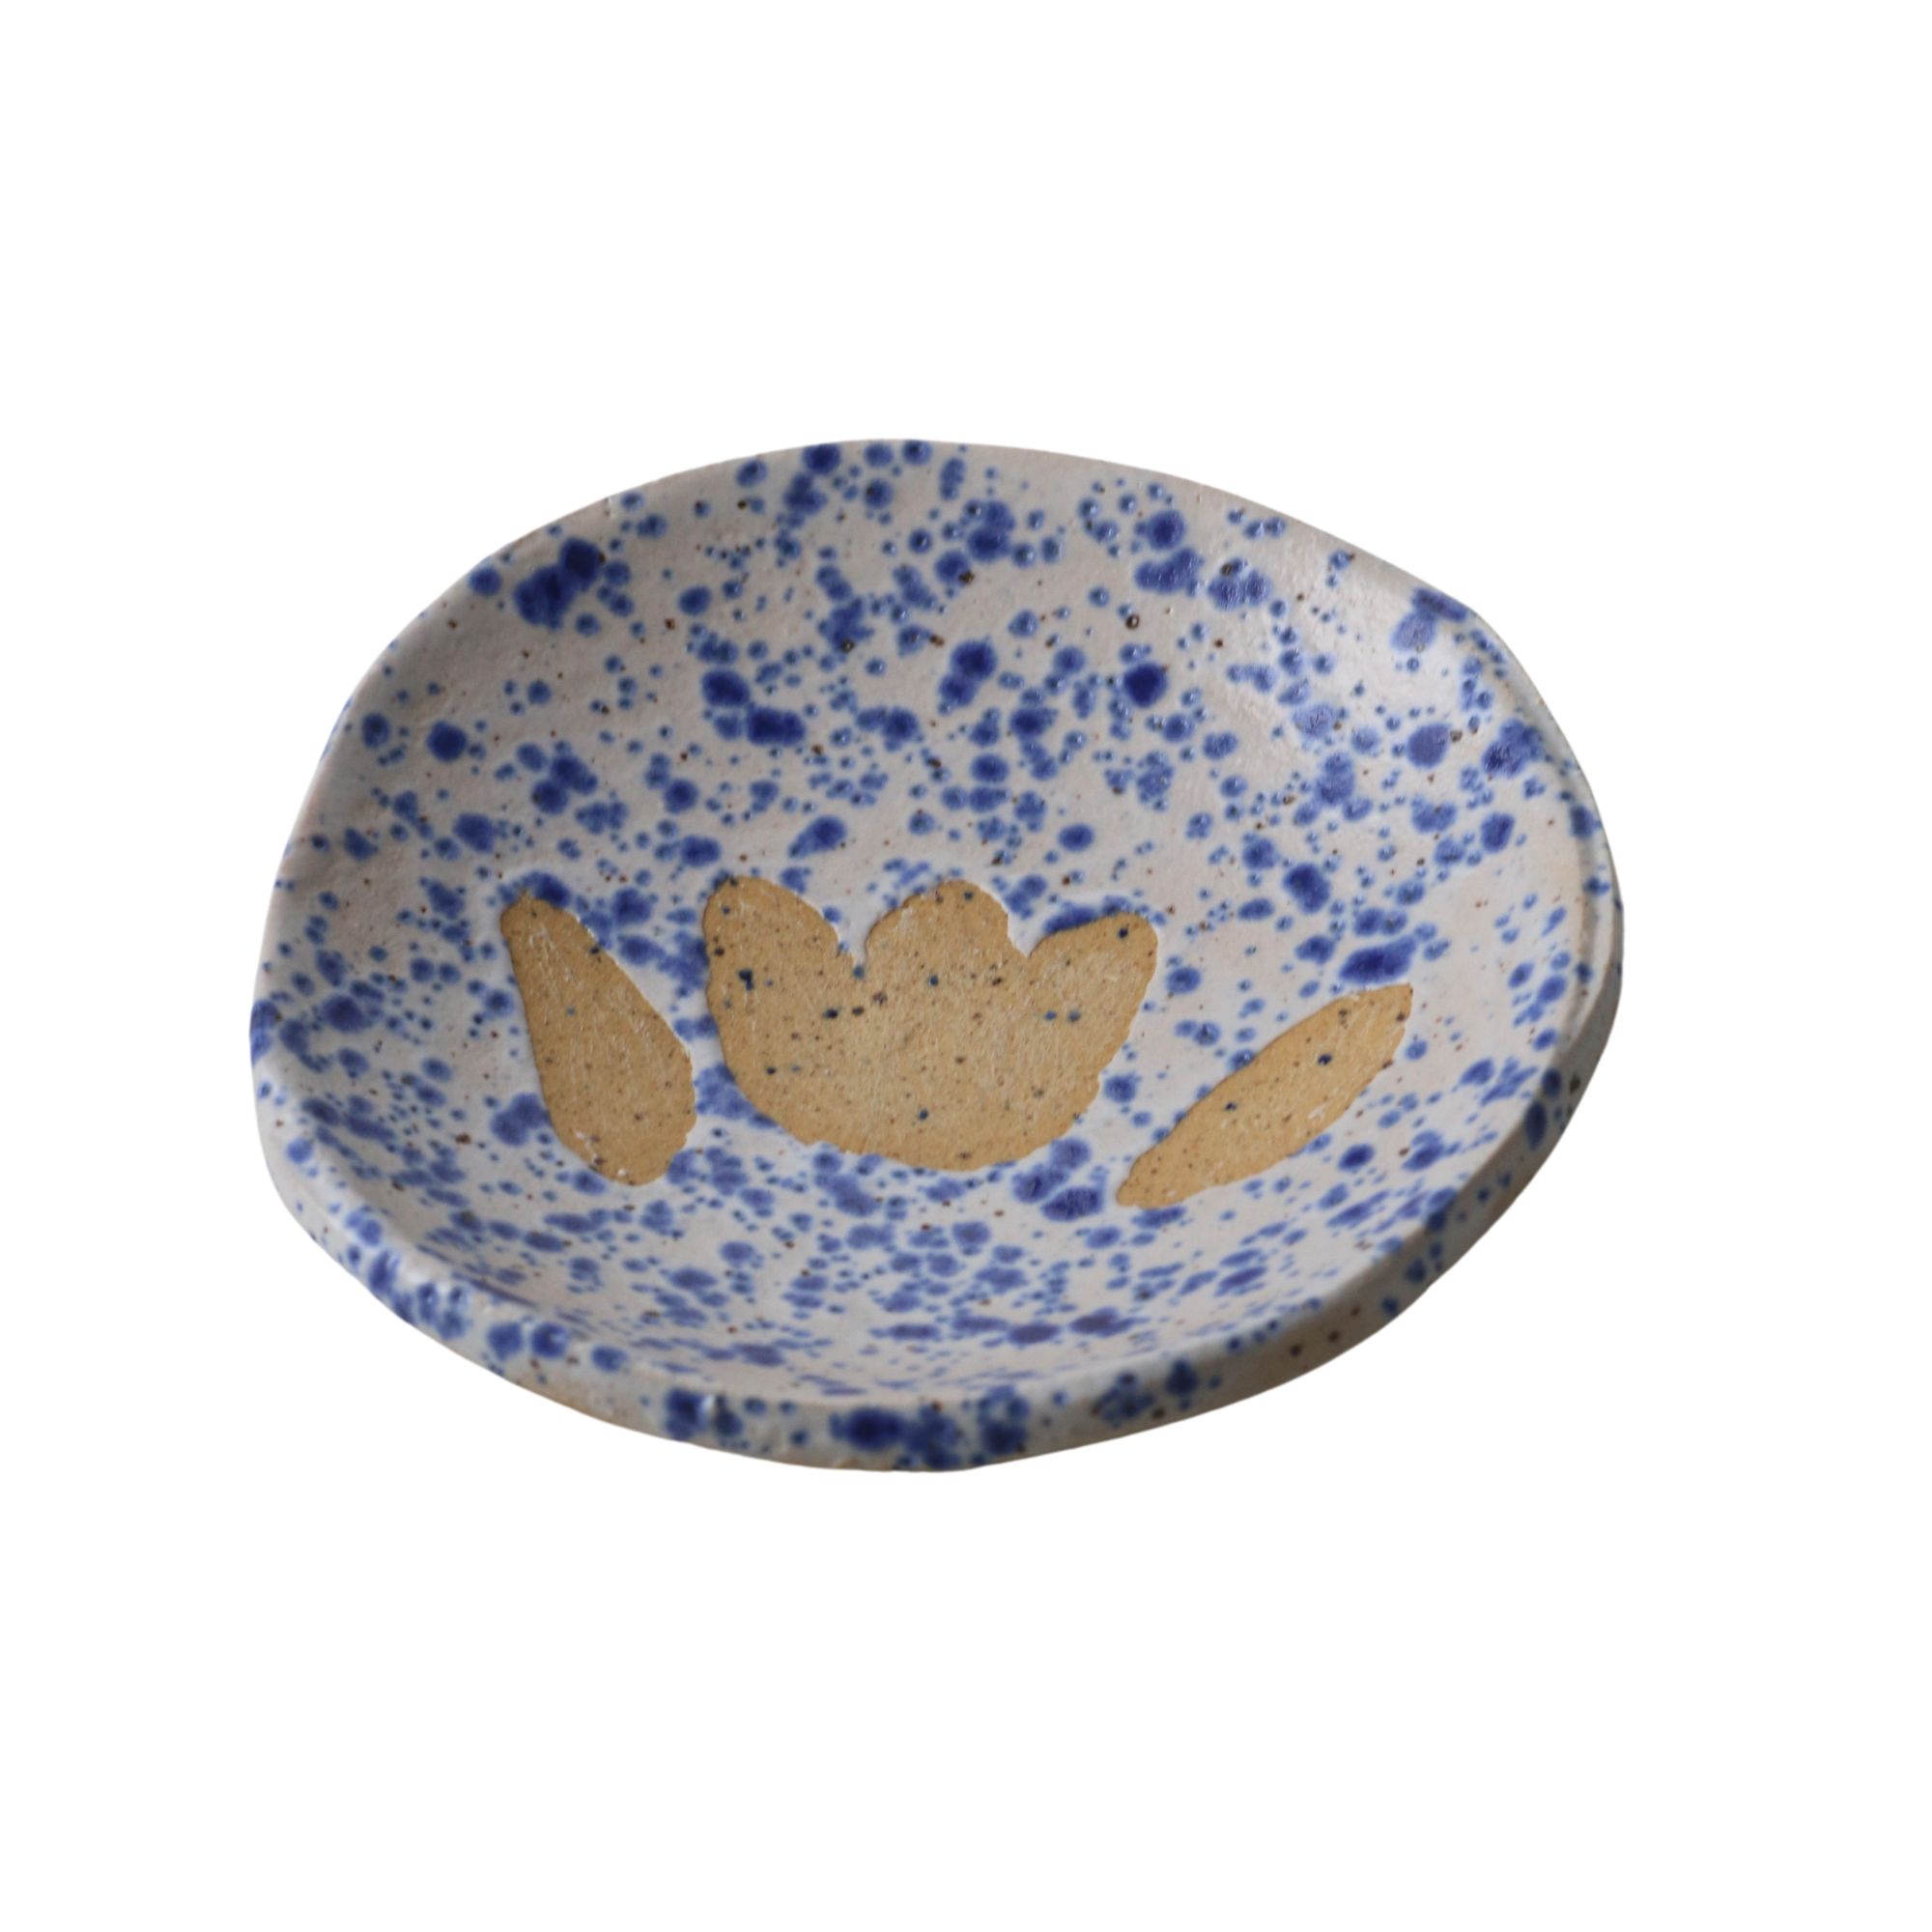 Dish No. 25 Crabapple Design Ceramic Dish